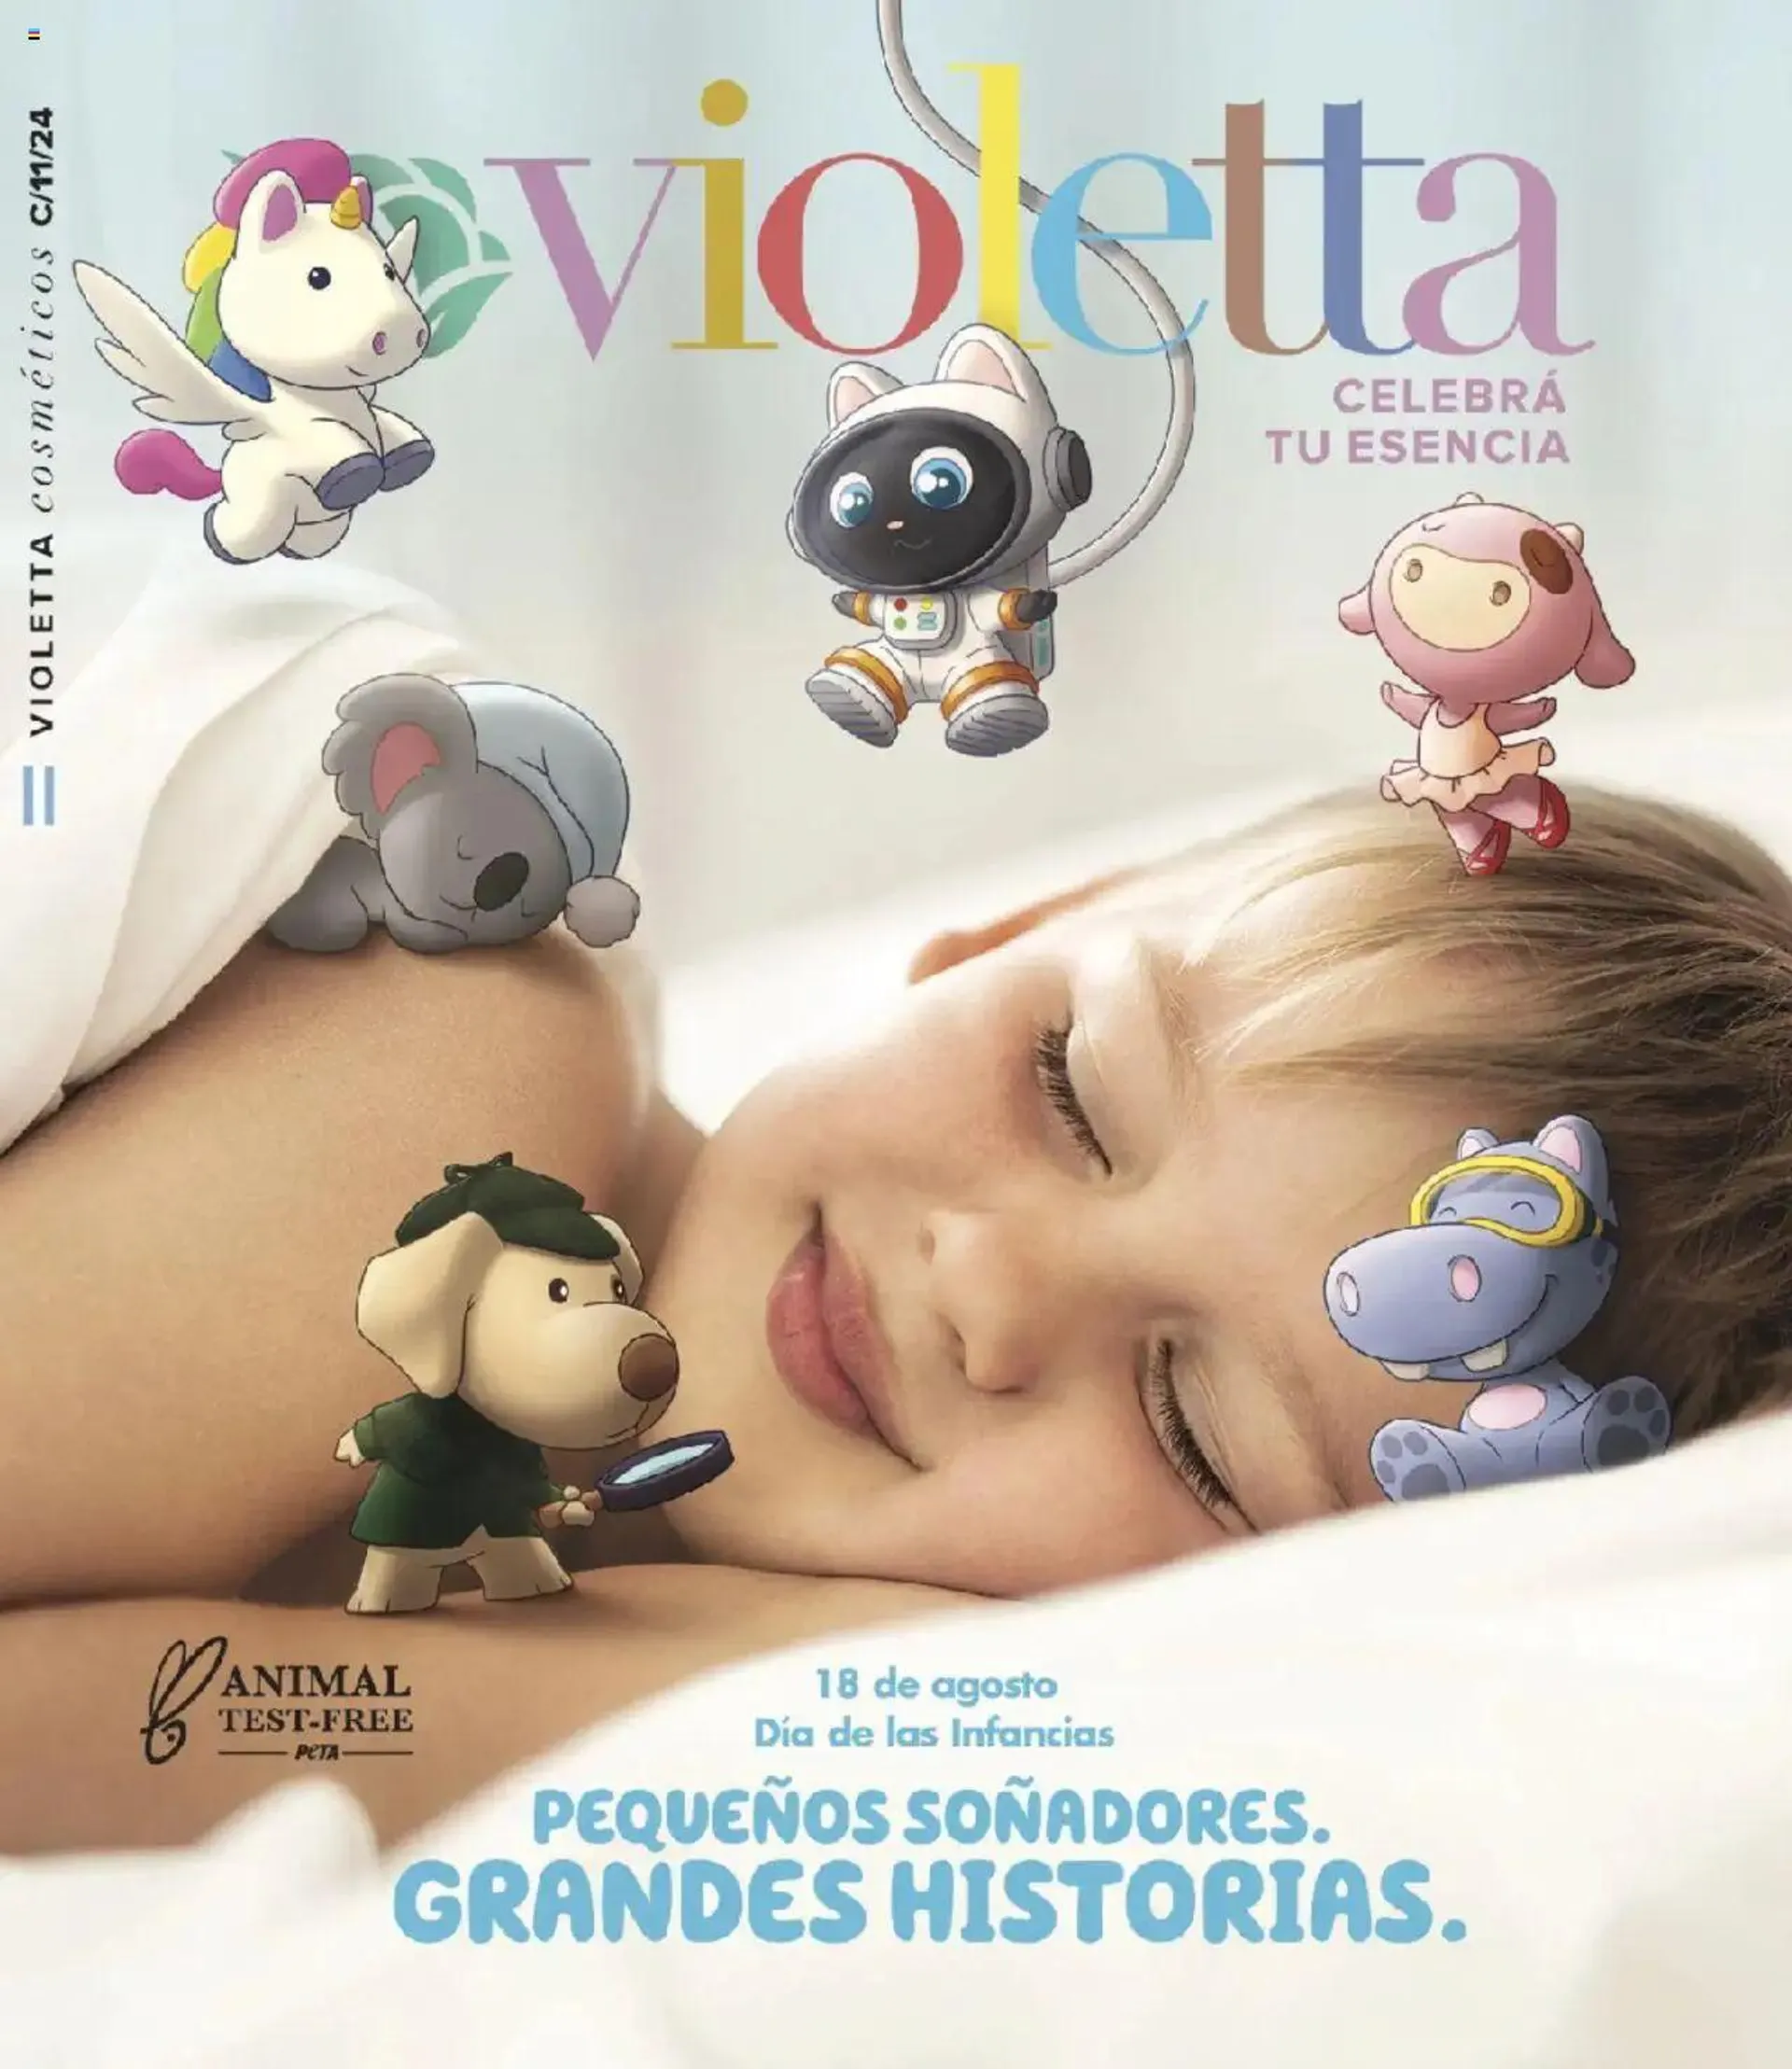 Violetta catálogo - 0